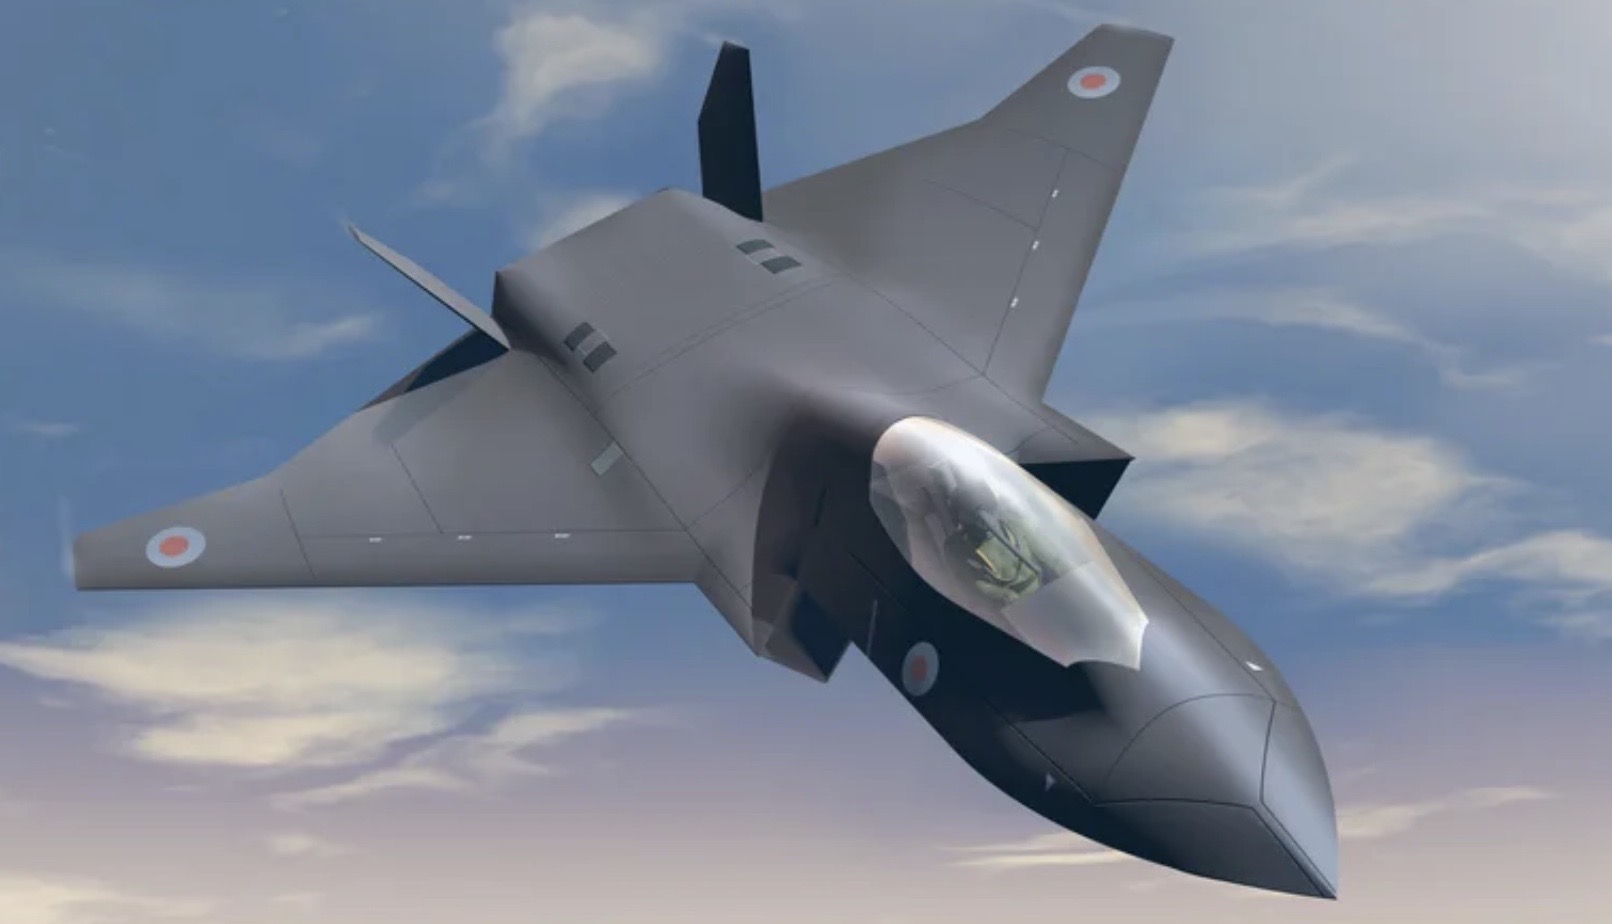 GCAP: Crosetto vola in Giappone per un trilaterale con i capi della Difesa inglese e nipponico per far volare il nuovo caccia di sesta generazione nel 2035